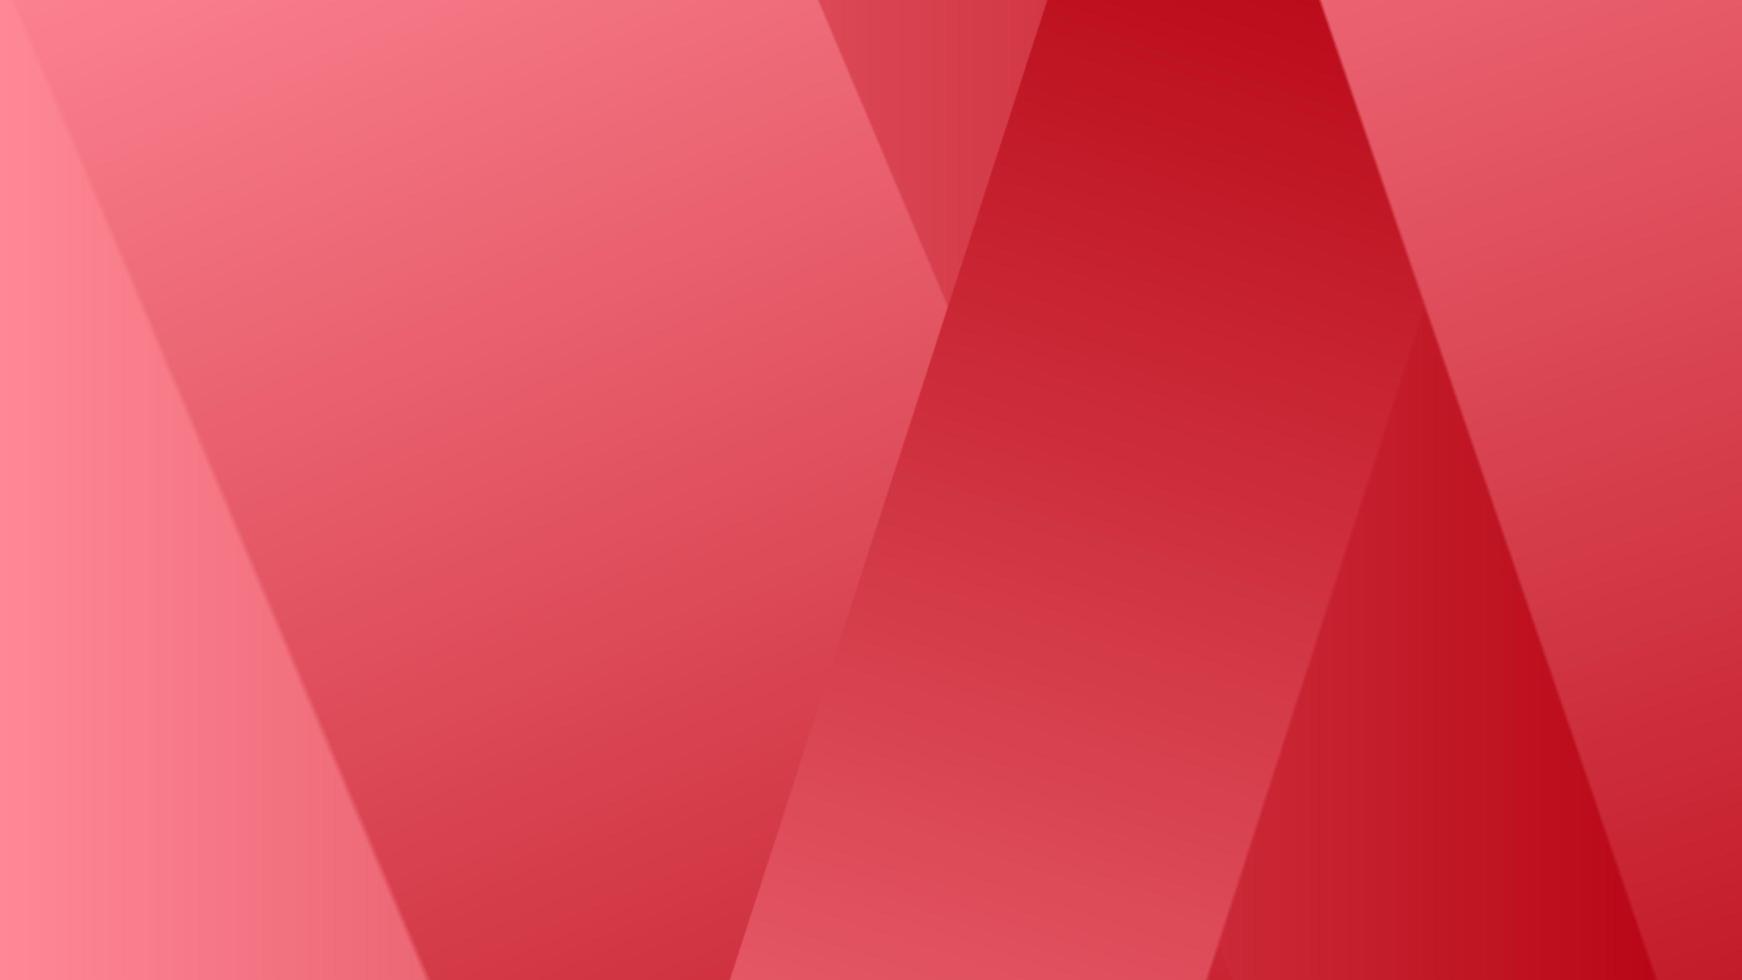 résumé simple moderne avec fond géométrique carré dans le mélange de dégradé rouge foncé et clair. un arrière-plan élégant dans des couleurs rouges foncées et claires peut être utilisé pour le papier peint, la présentation, la toile de fond, etc. photo